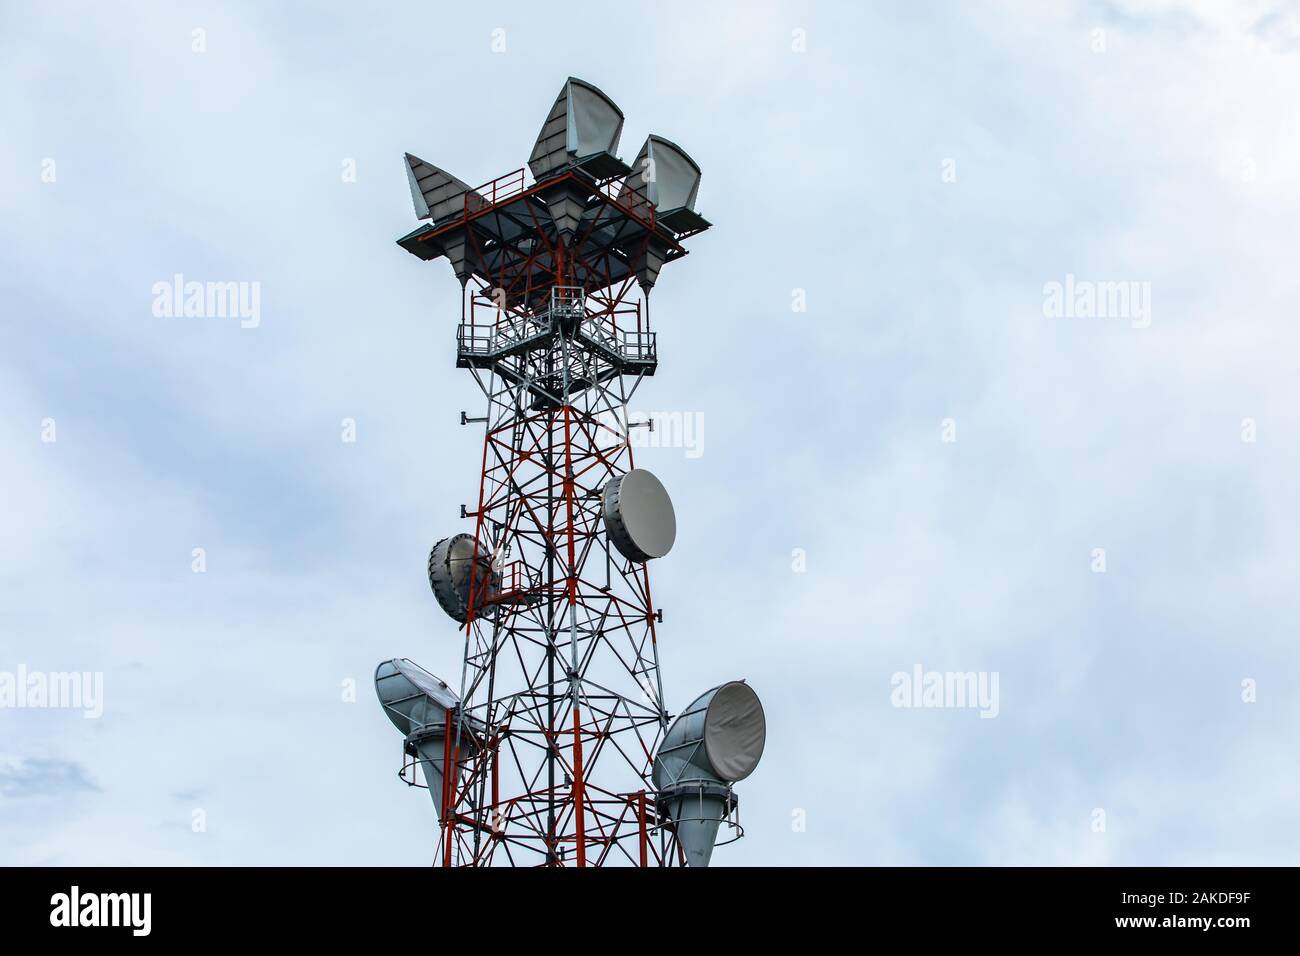 Détails d'une station de base de téléphonie cellulaire tour GPS pour  l'échange des signaux radio et des données géolocalisées, installé sur un  treillis en acier rouge et blanc pylône Photo Stock -